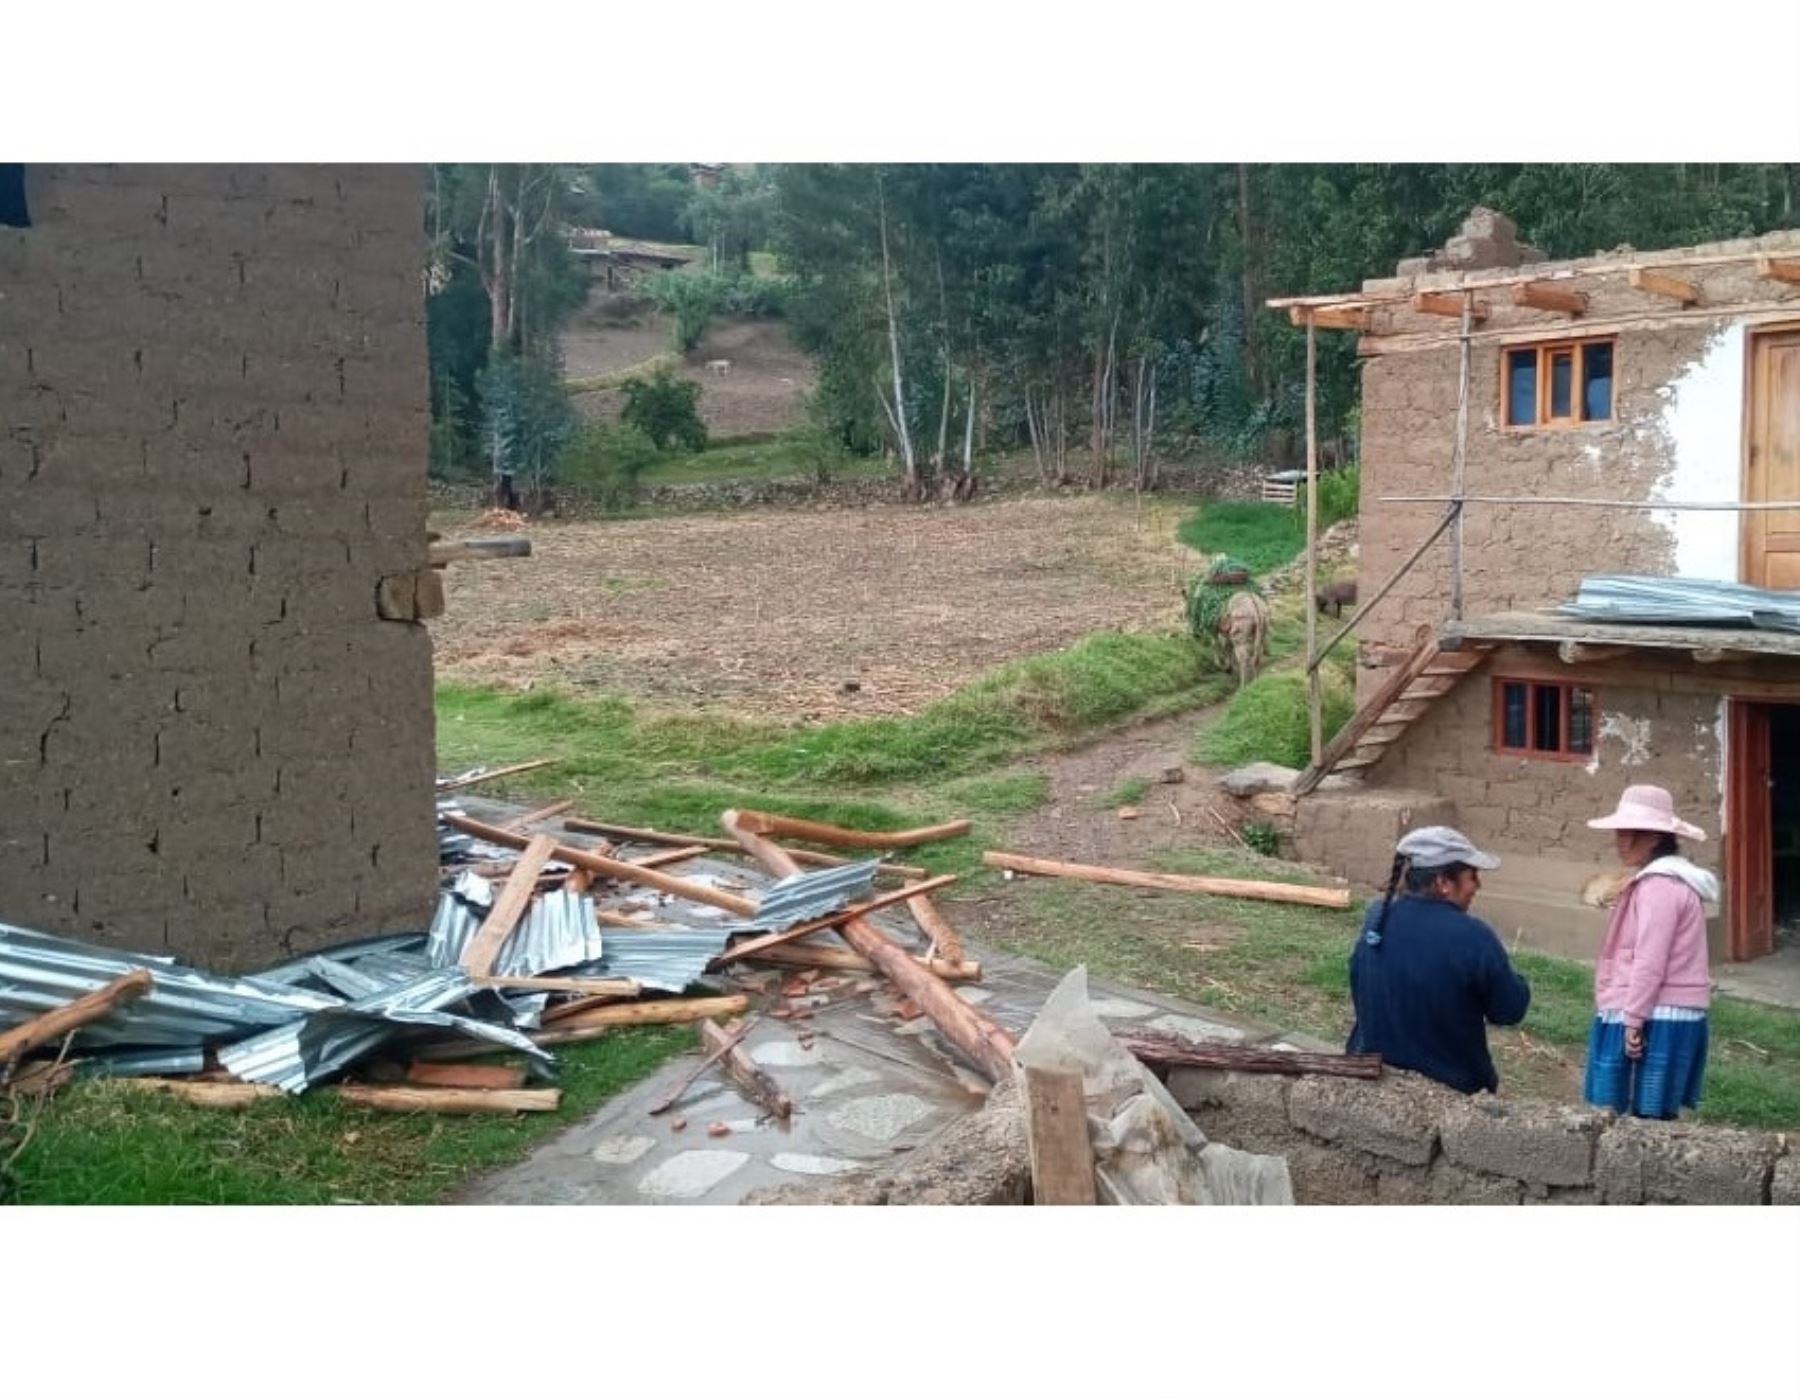 Vientos fuertes continúan causando estragos en Áncash. El COER reportó que una vivienda rústica en Yungay resultó afectada por este fenómeno natural.